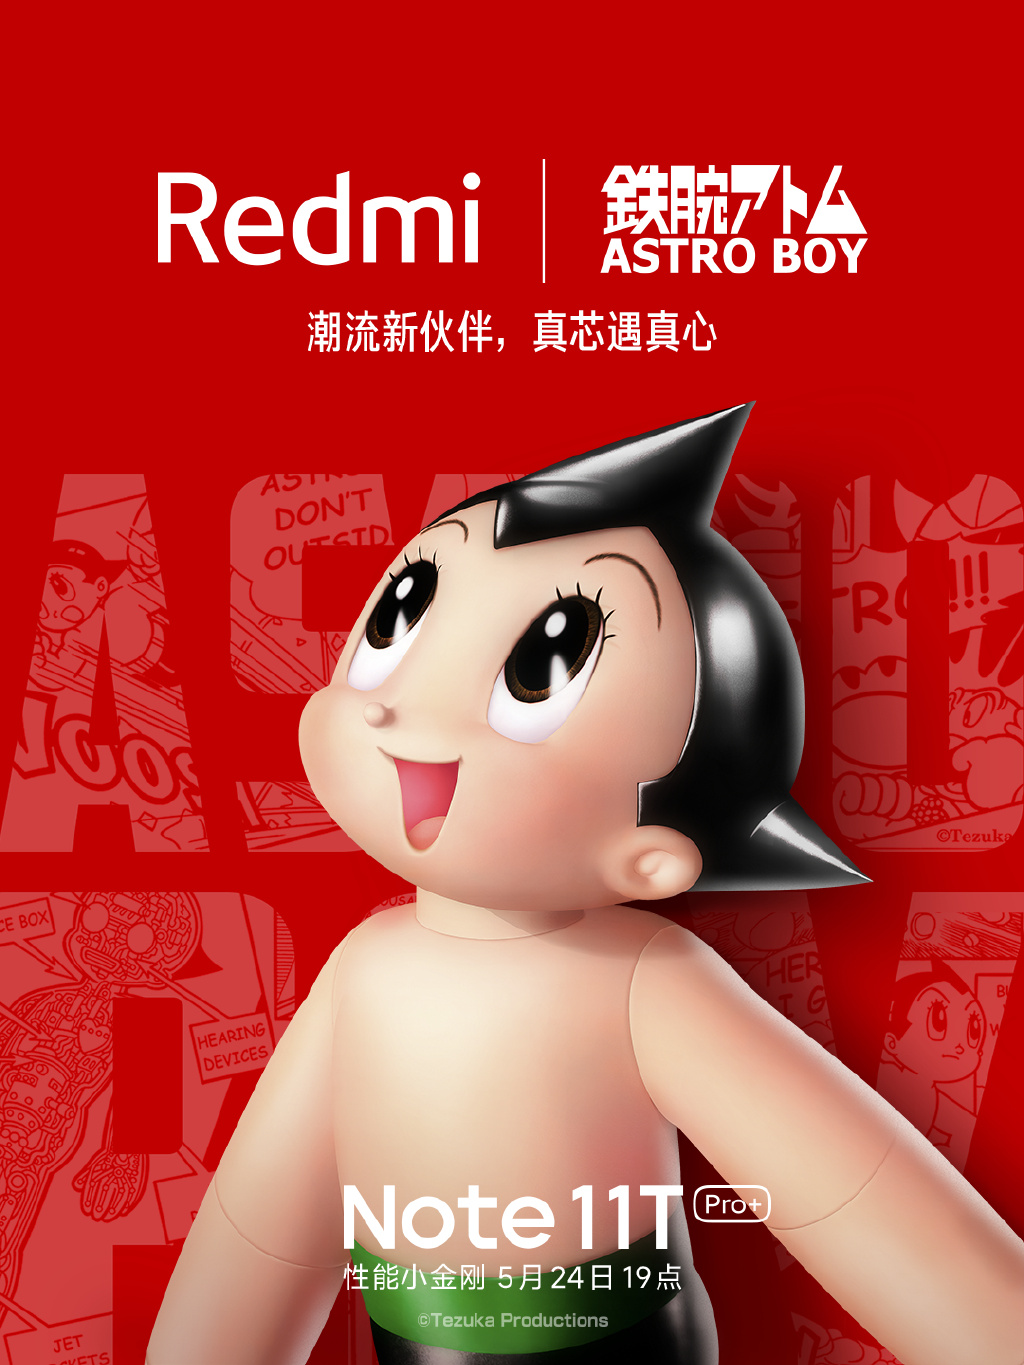 Redmi Note 11T Pro+将与铁臂阿童木联名定制